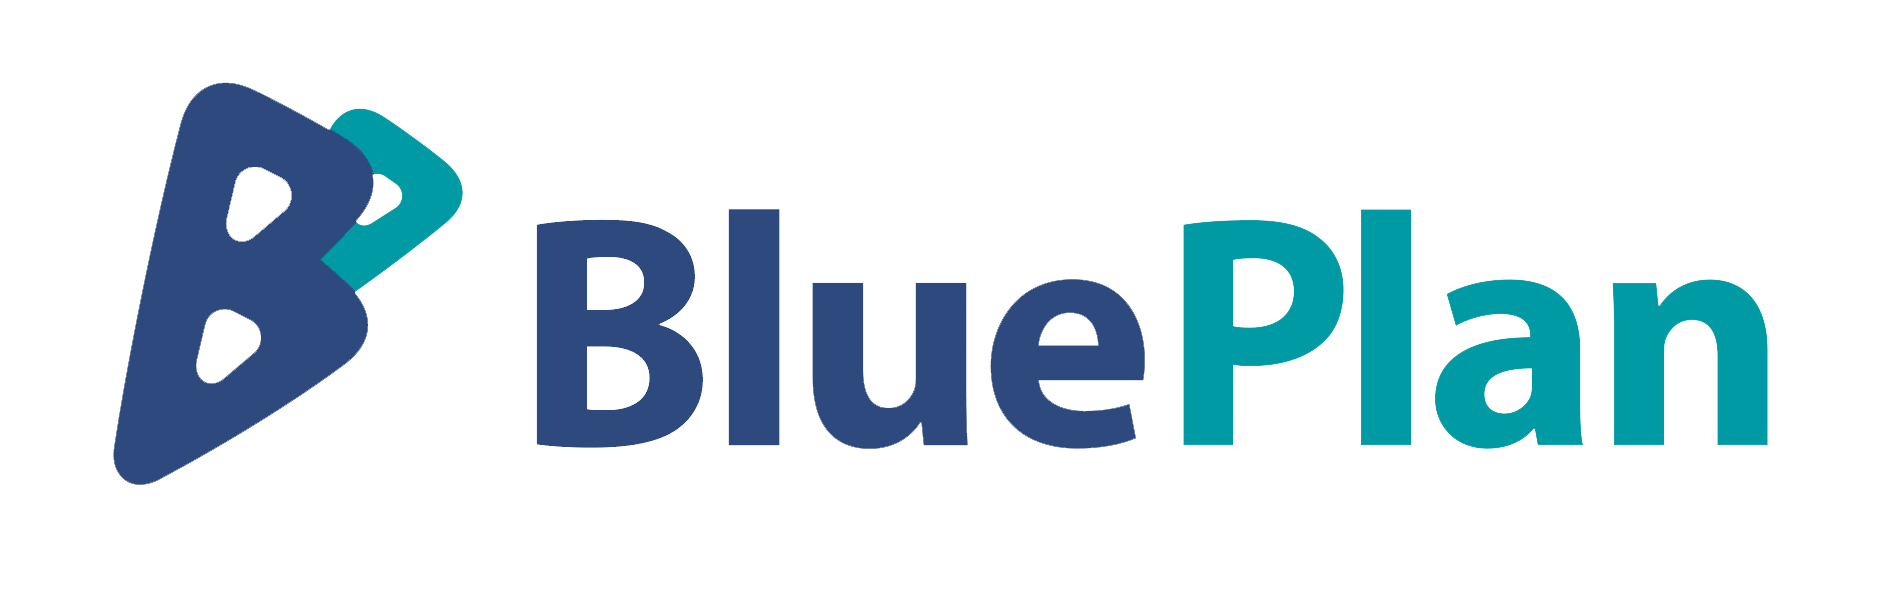 Boplan distributor: BluePlan Oy logo